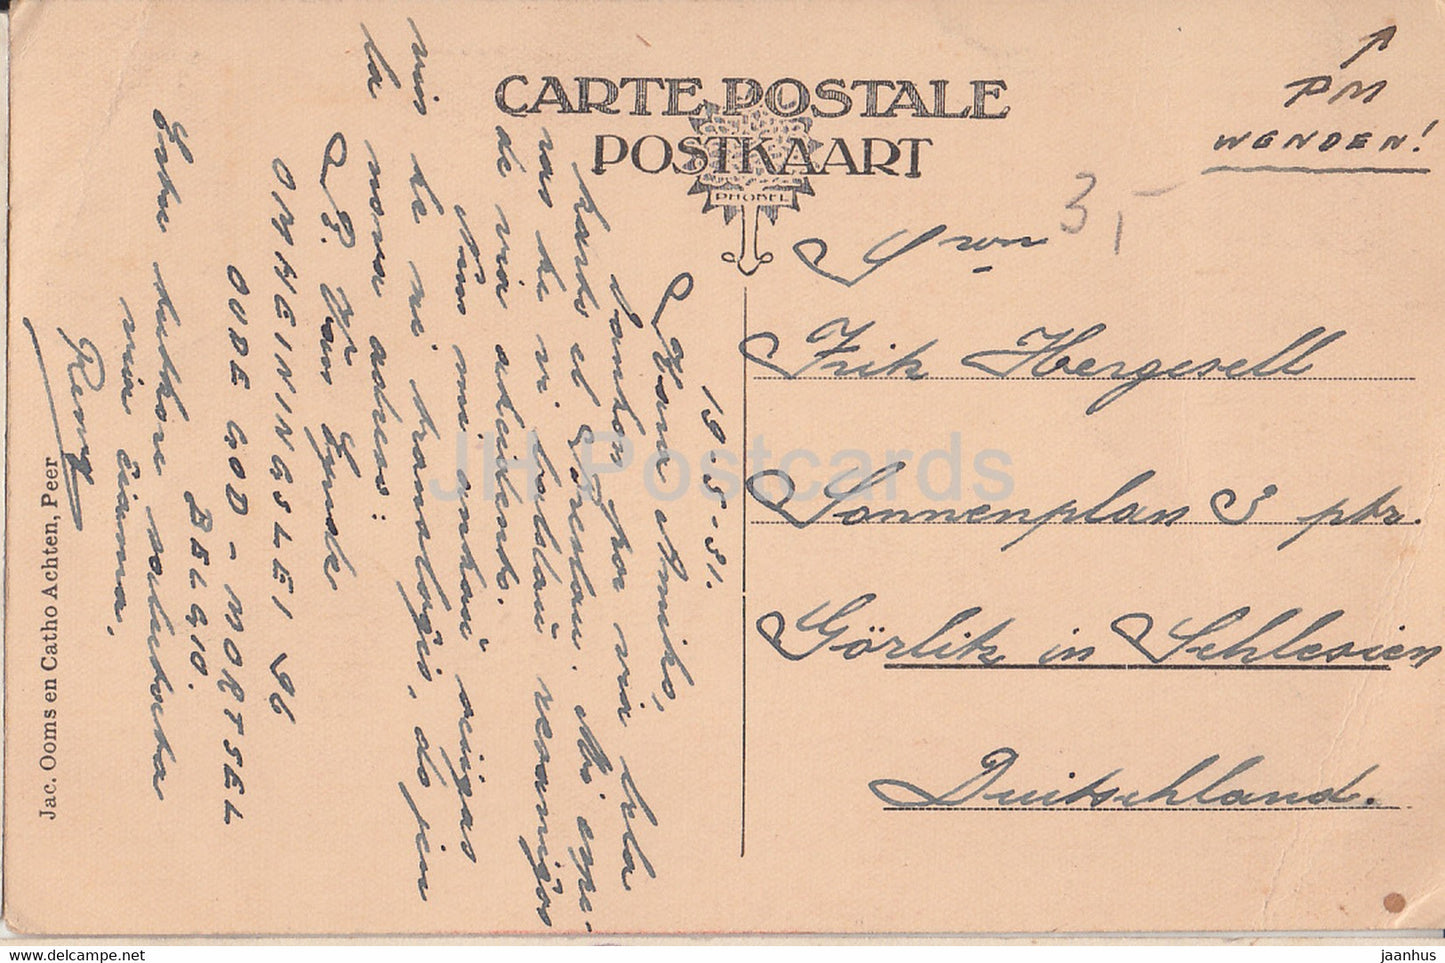 Peer - De Molen - moulin à vent - carte postale ancienne - 1931 - Belgique - utilisé